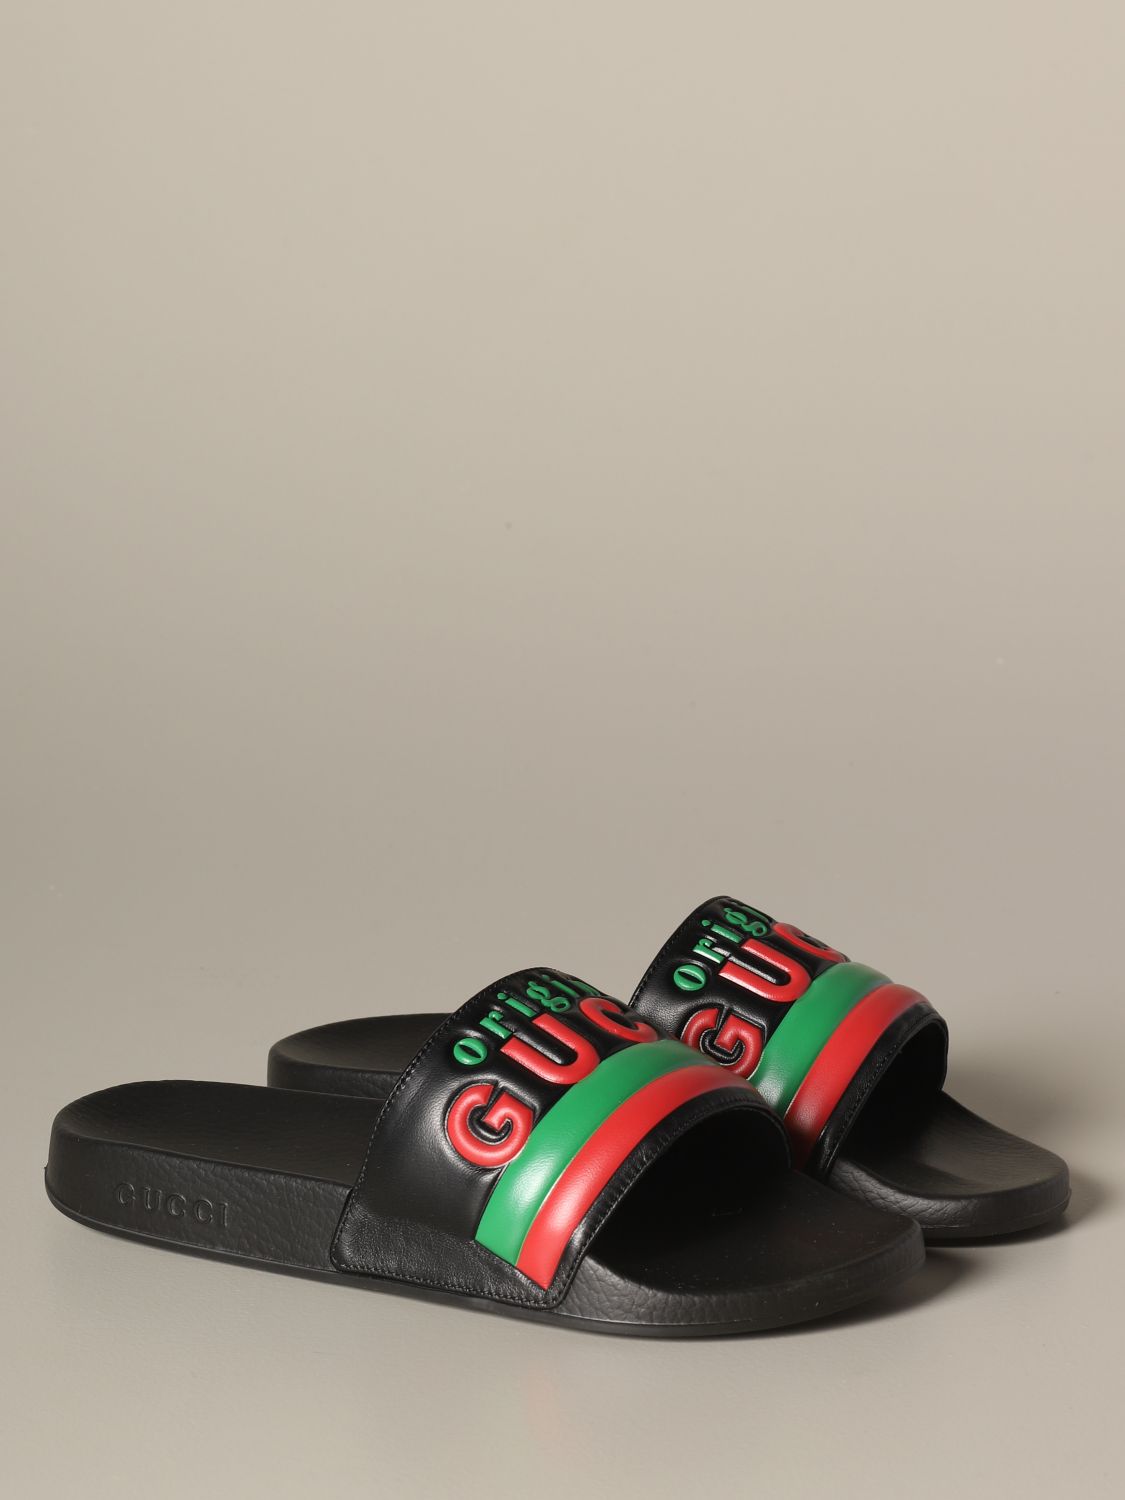 real gucci flip flops